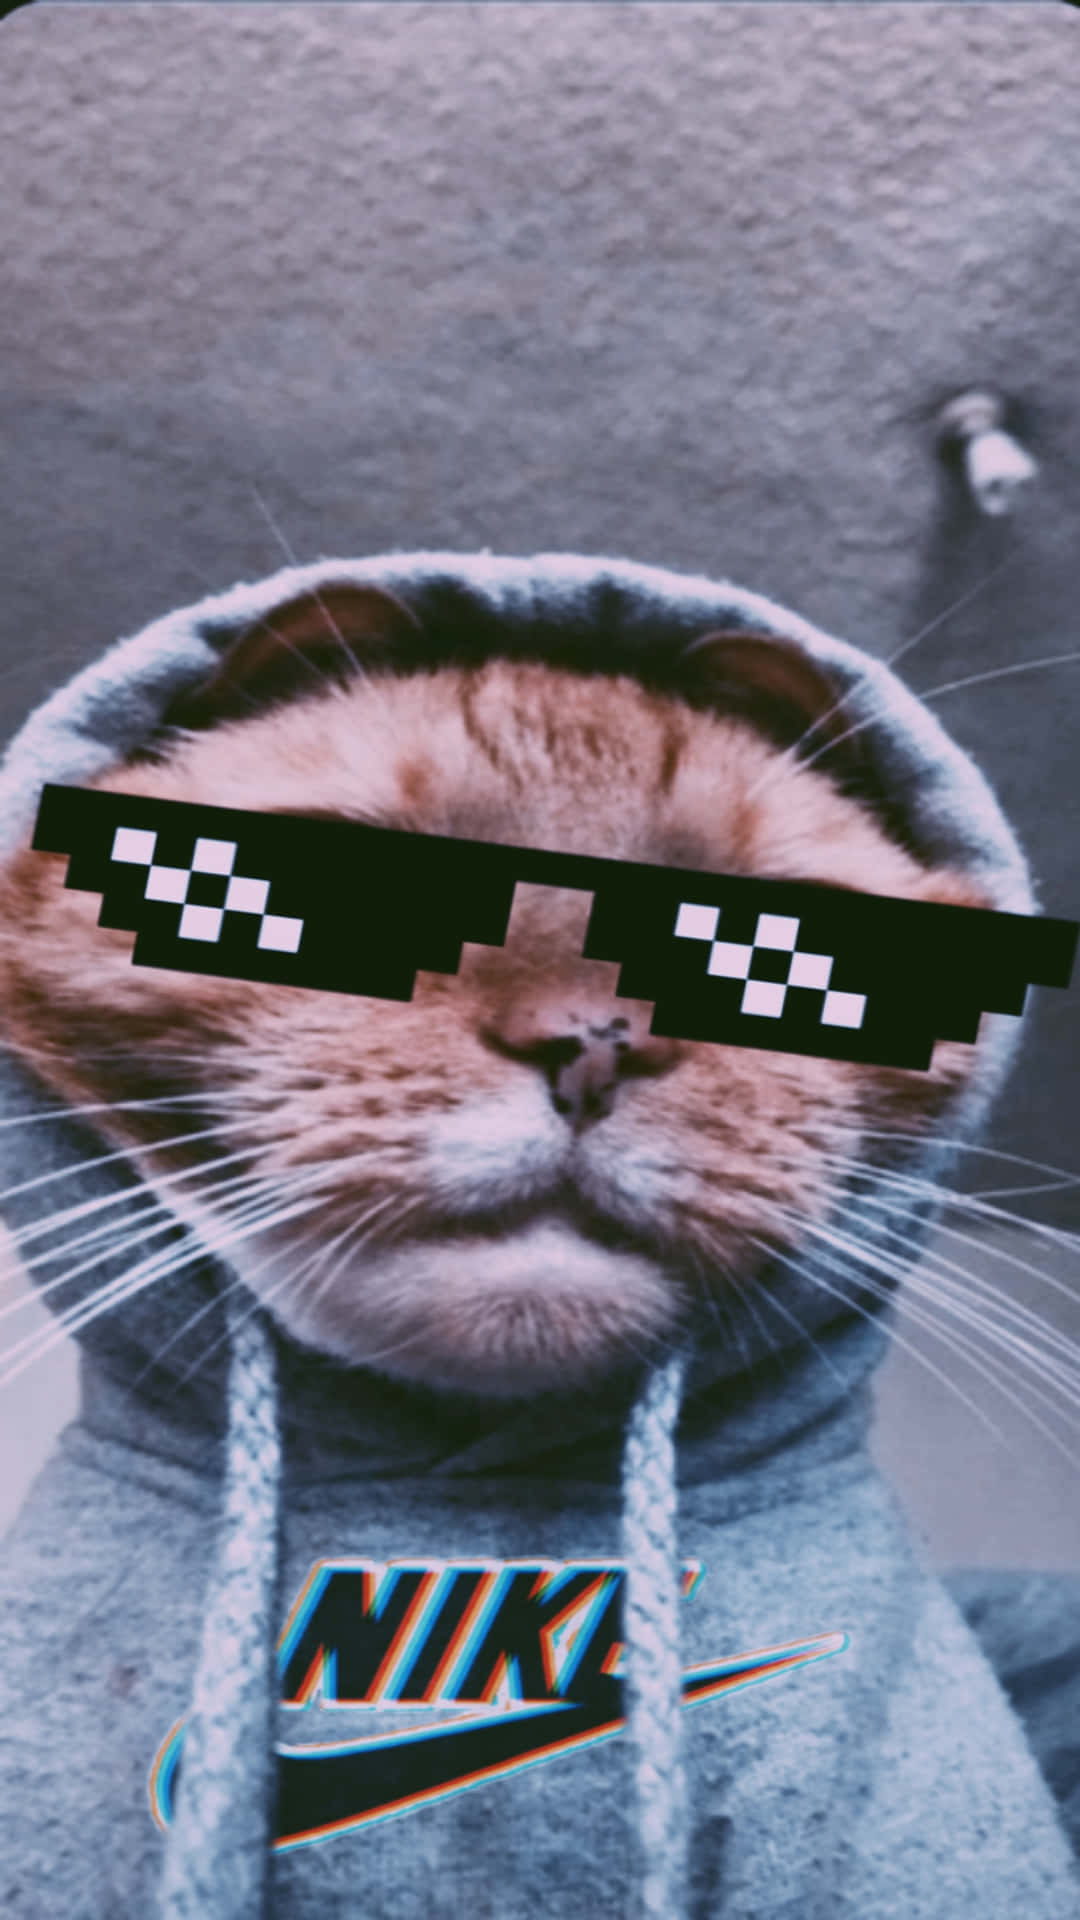 Memesgraciosos De Gatos, Gato Con Sudadera Con Capucha E Imagen De Gato Con Gafas De Sol En Estilo 8 Bits.